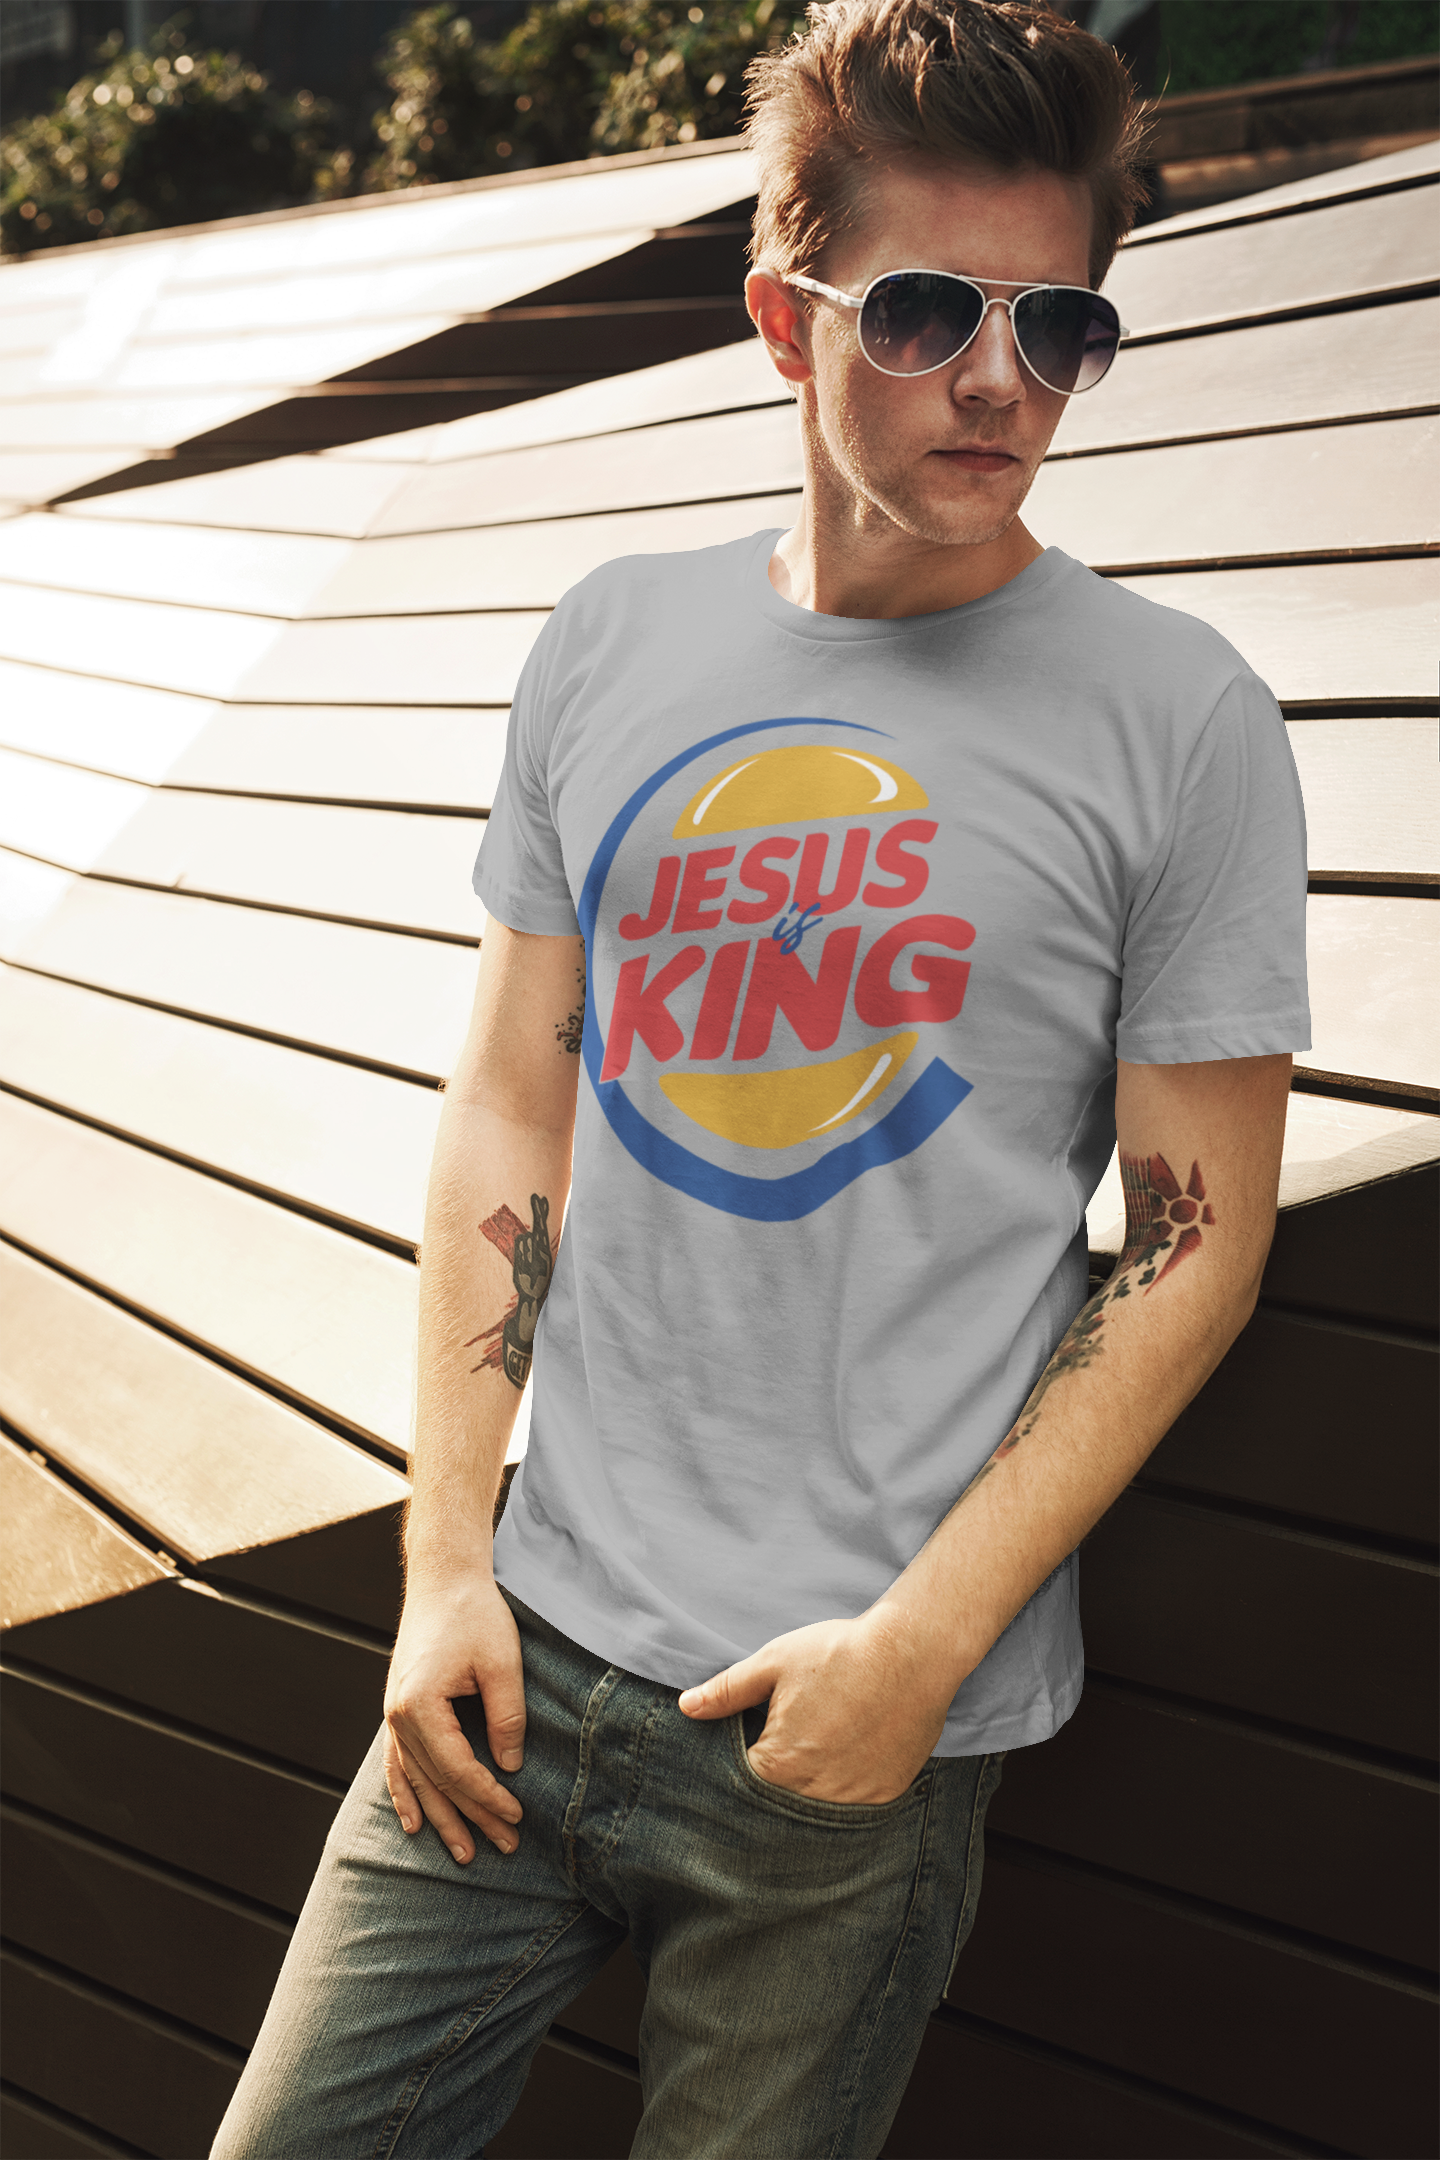 ULTRABASIC Men's T-Shirt Jesus is King - Bible Christian Religious Shirt